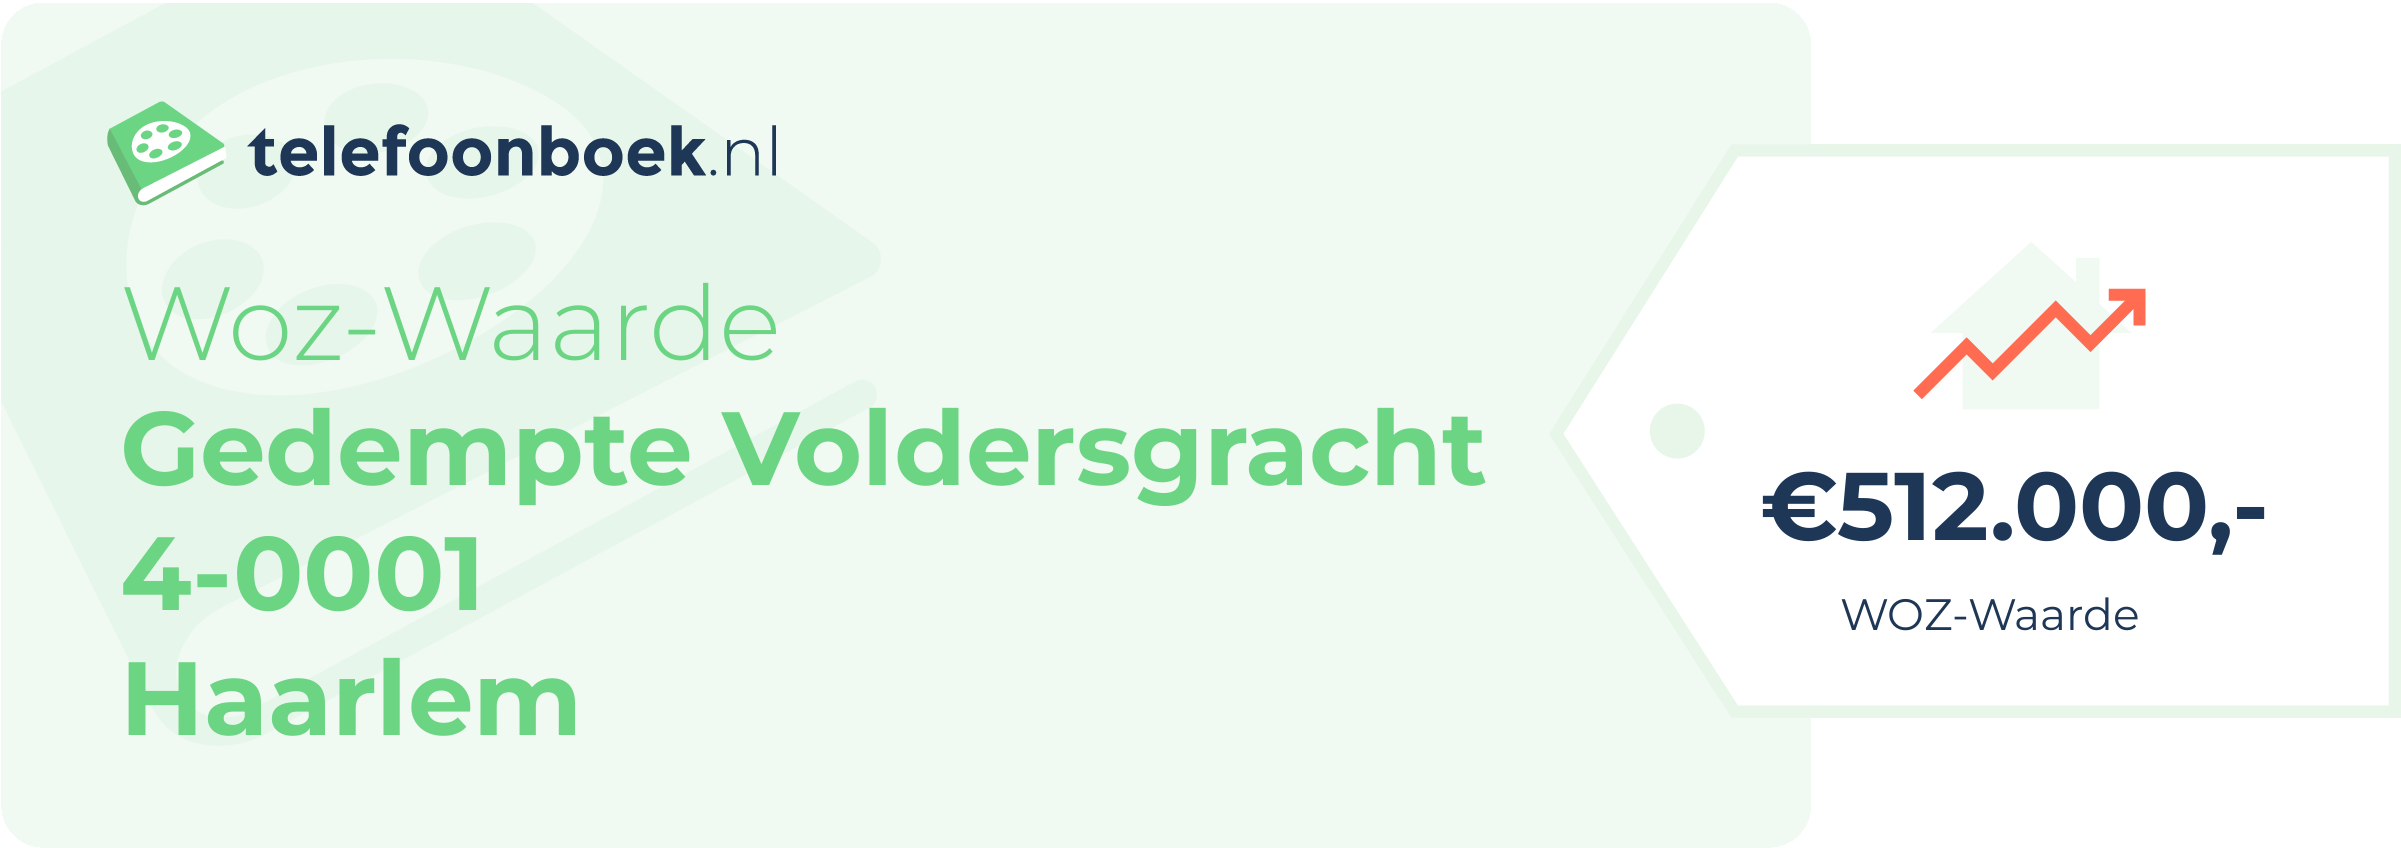 WOZ-waarde Gedempte Voldersgracht 4-0001 Haarlem